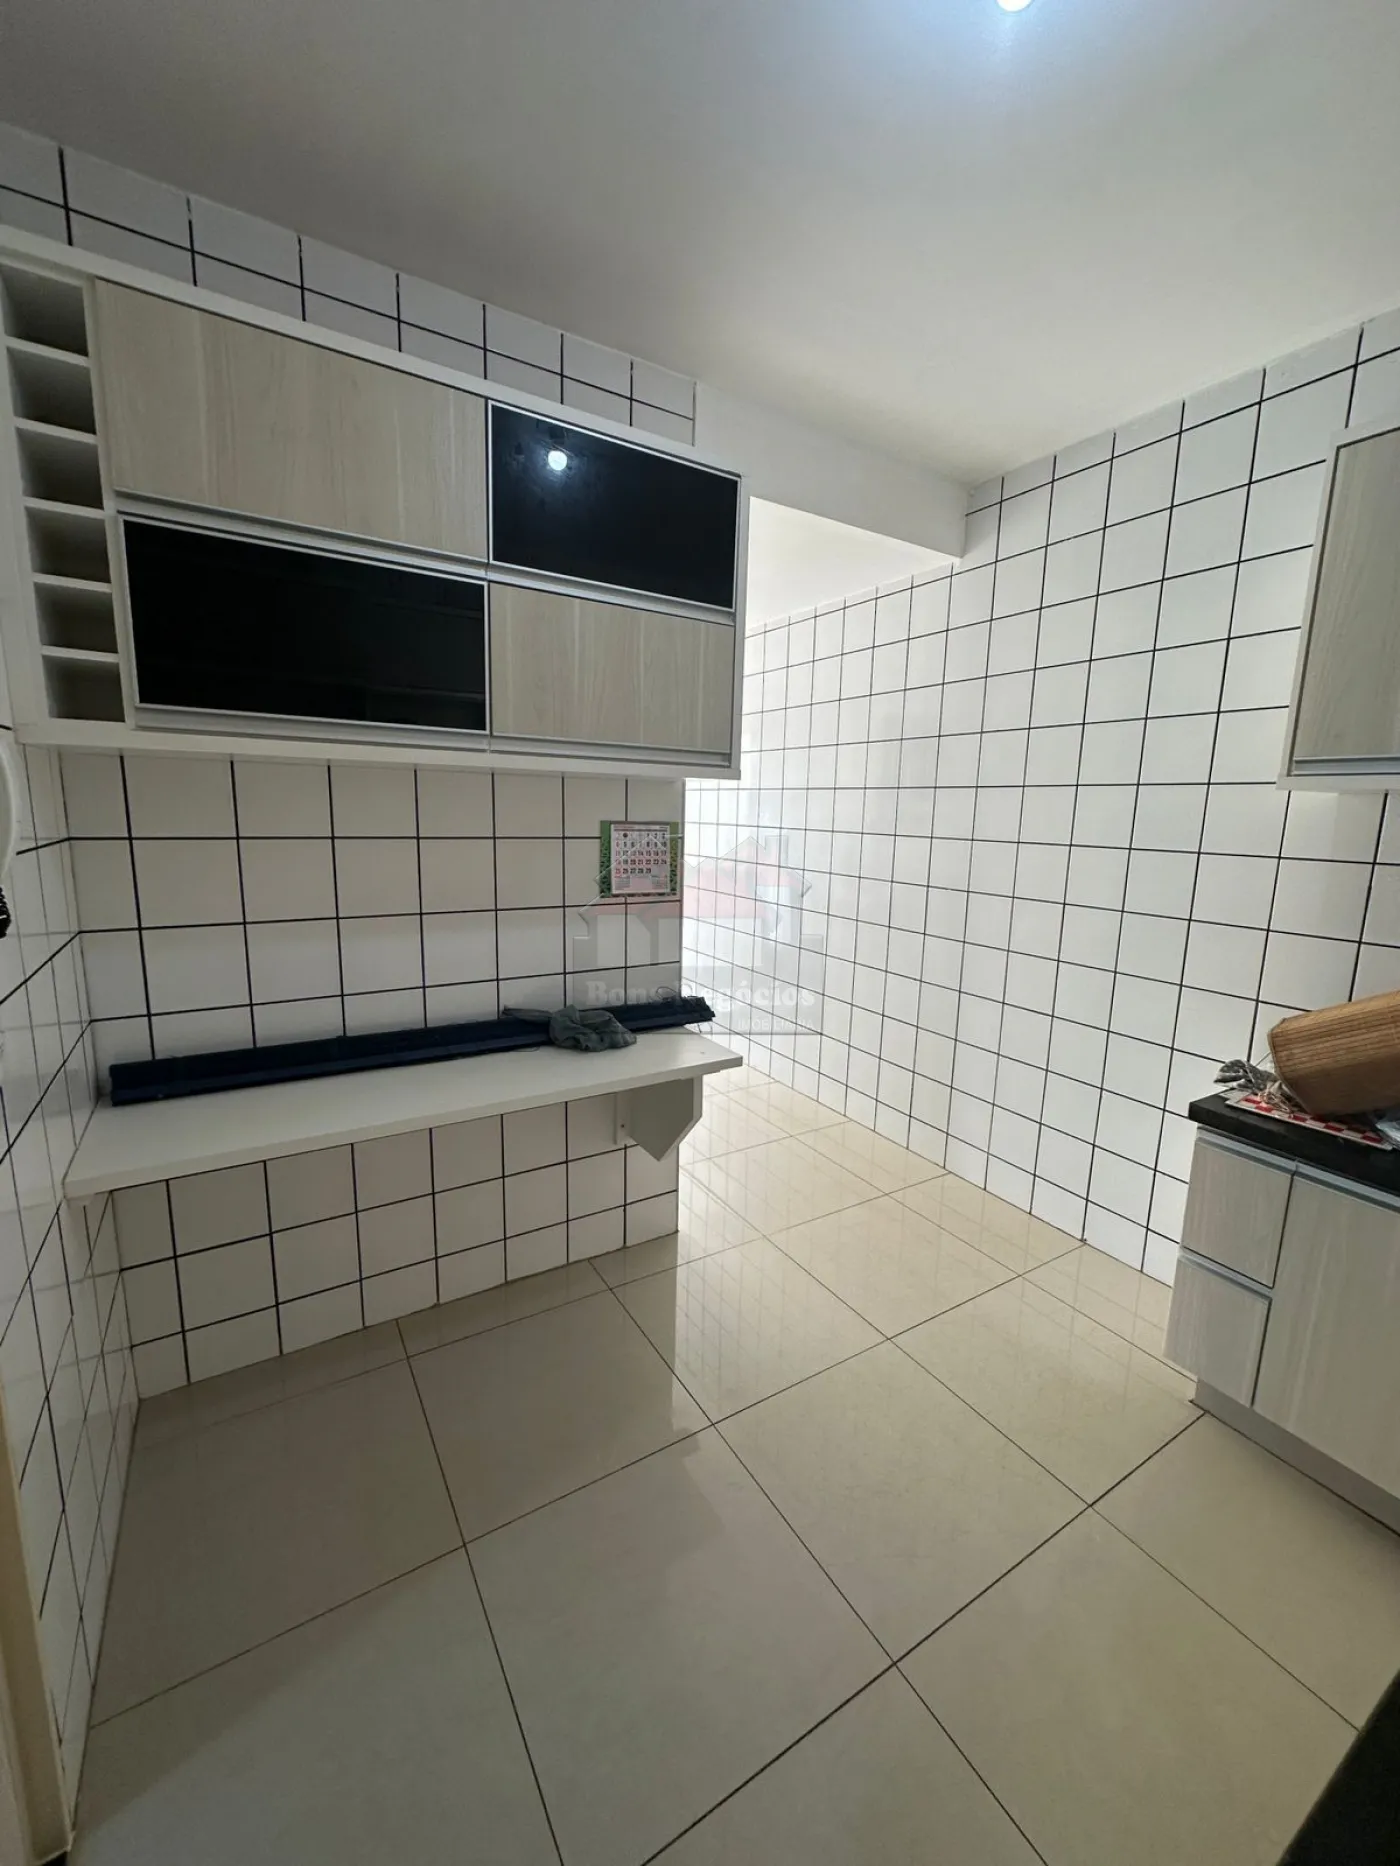 Alugar Apartamento / Padrão em Ribeirão Preto R$ 1.050,00 - Foto 2